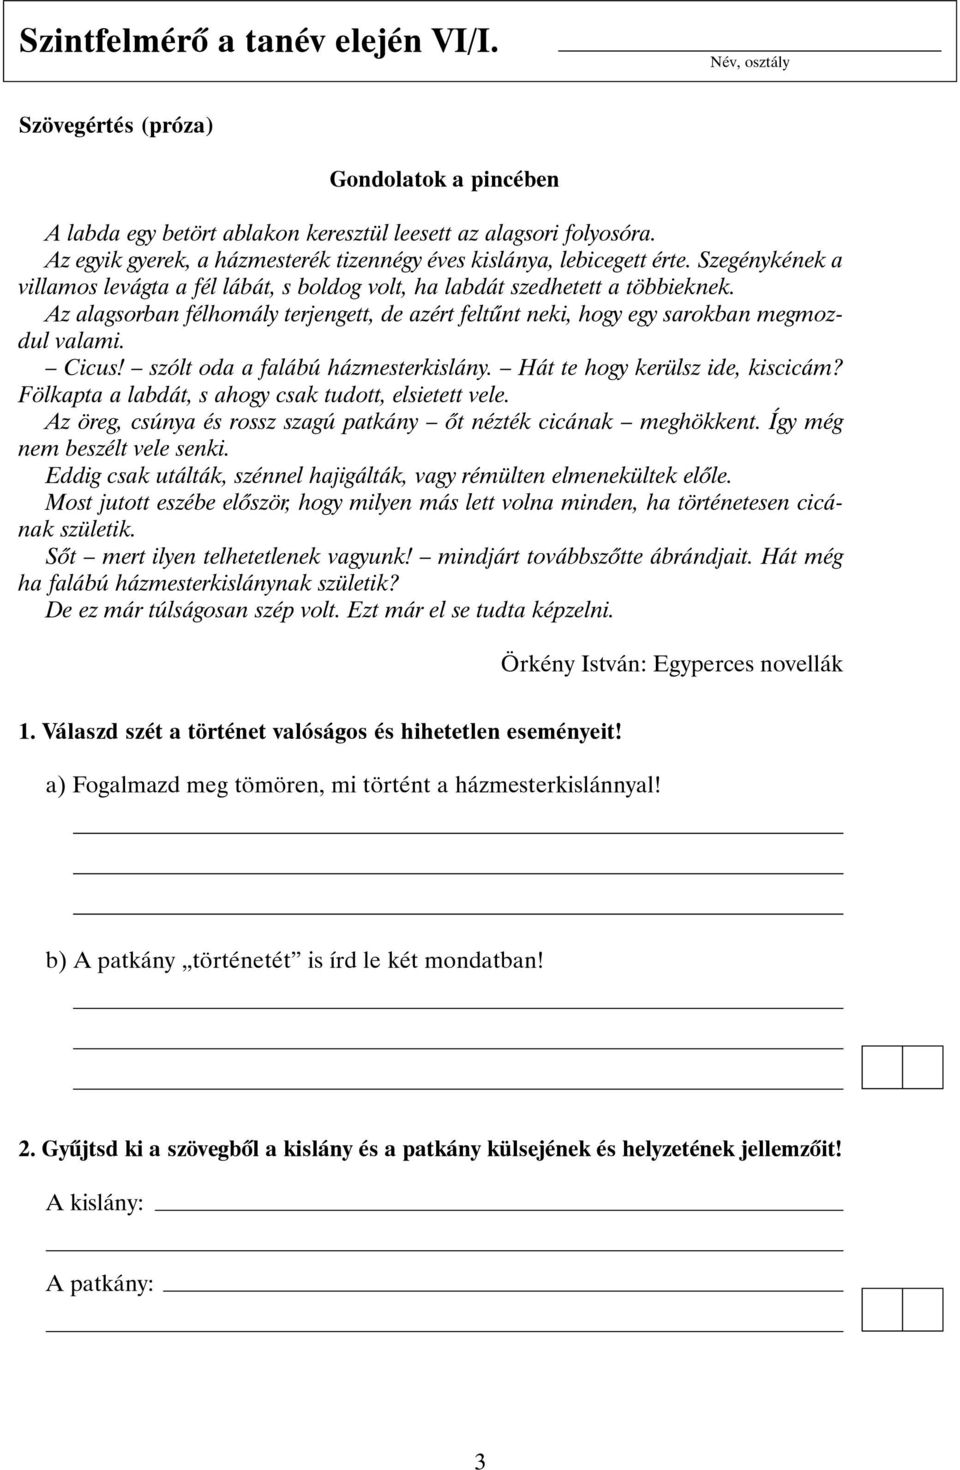 Felmérõlapok a Világjáró címû irodalomtankönyvhöz. 6. évfolyam - PDF Free  Download